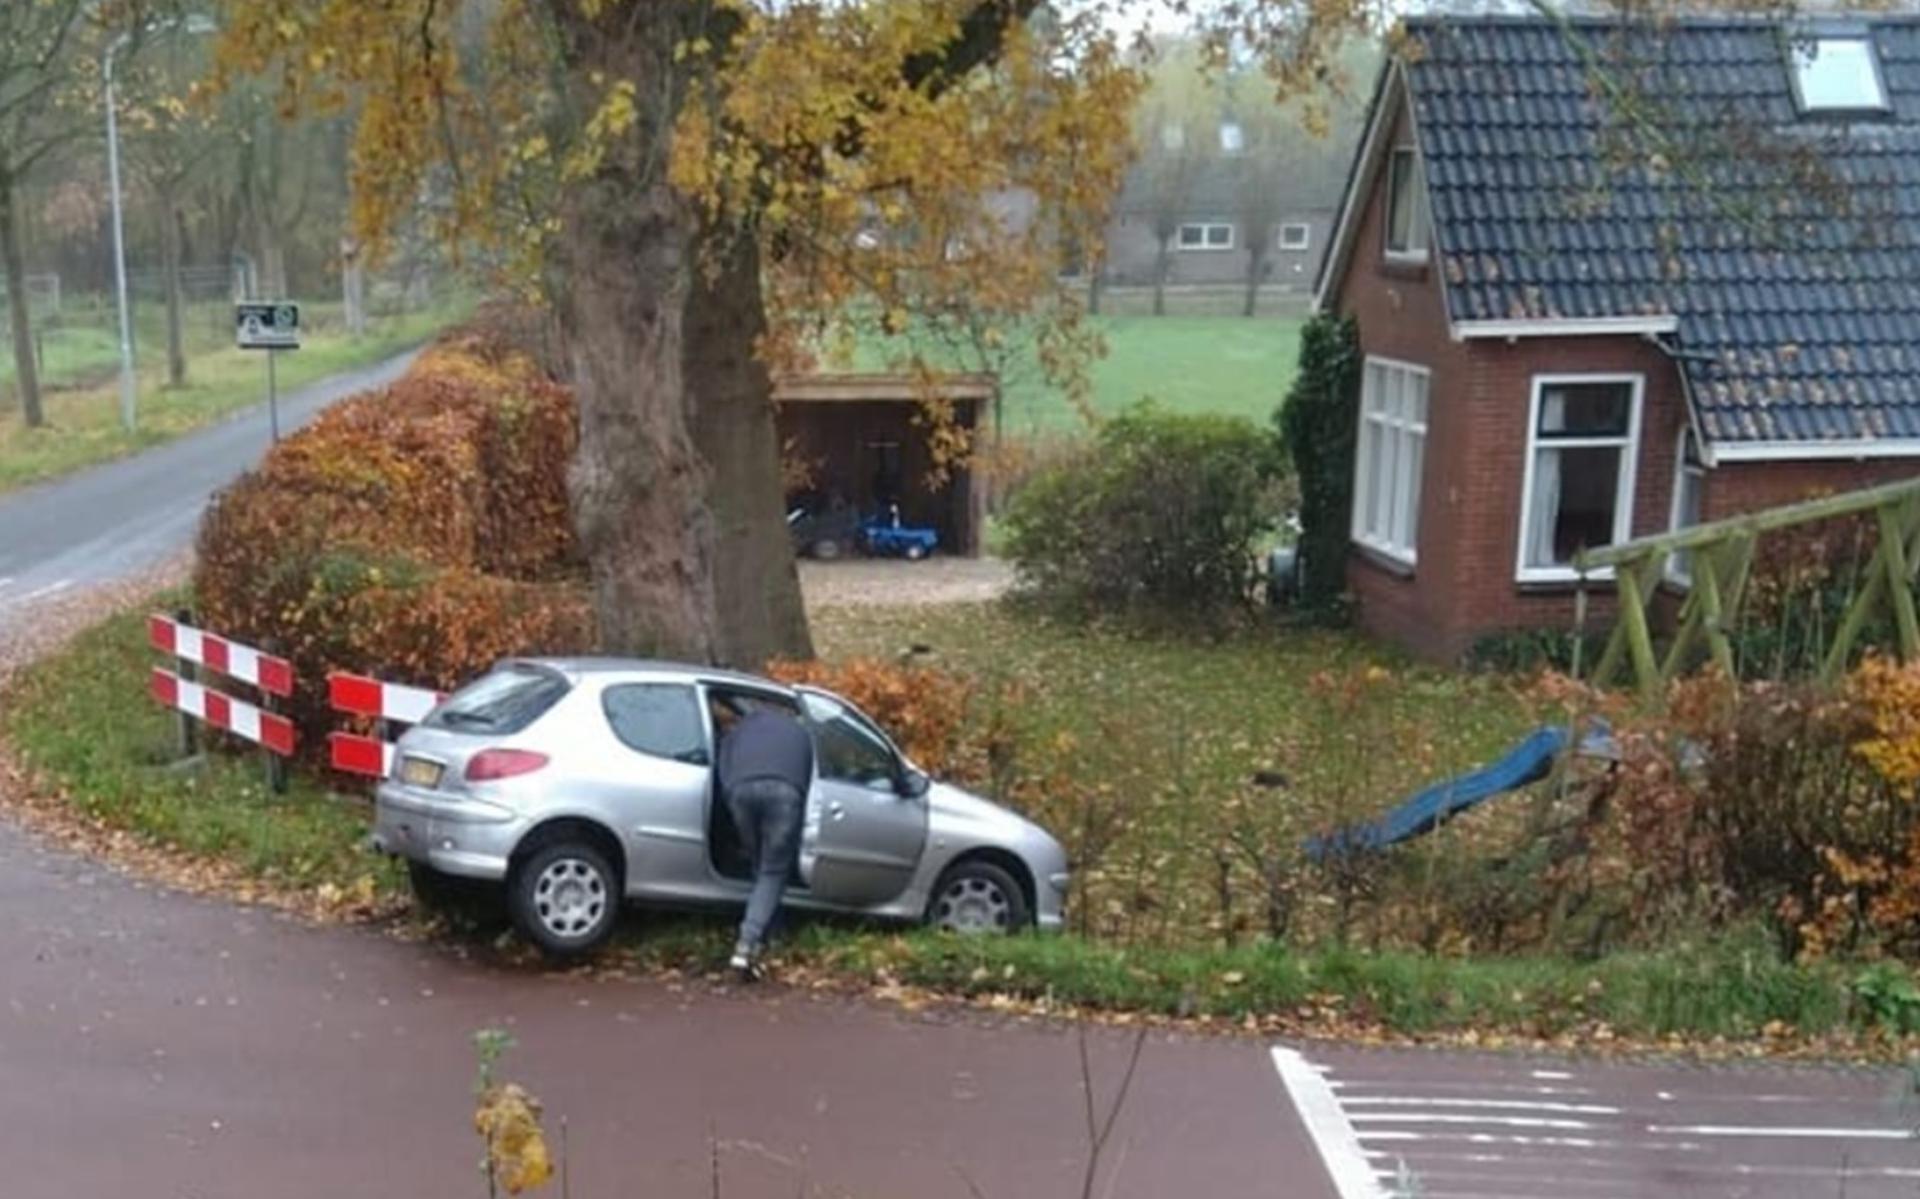 Eén van de zes crashes die einidgden in de tuin van een familie in Niebert. Foto: DvhN